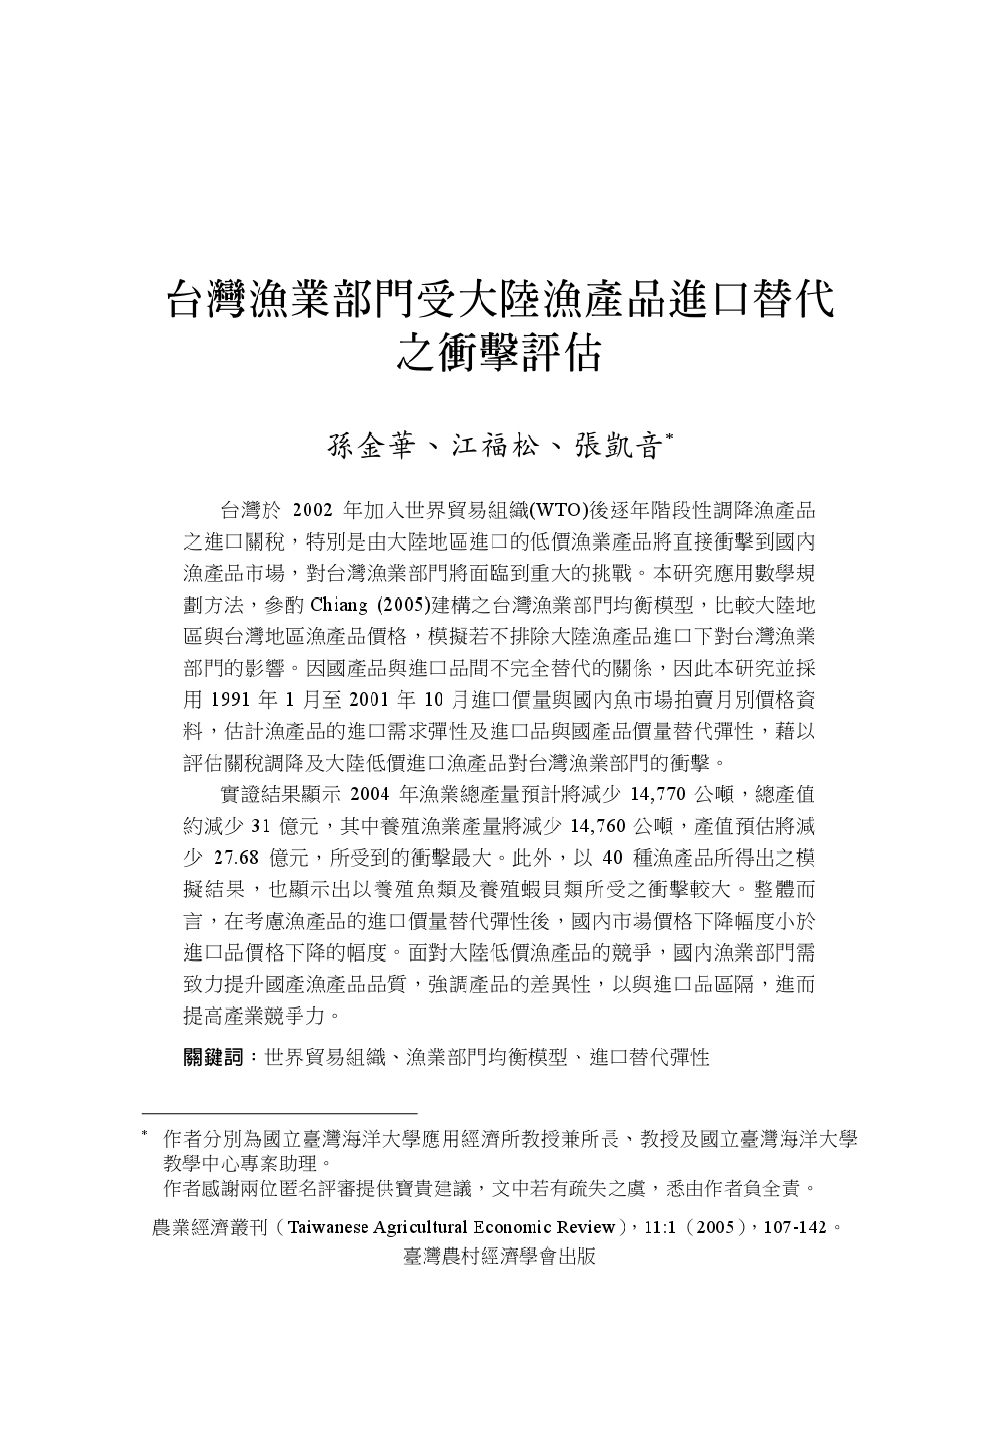 台灣漁業部門受大陸漁產品進口替代之衝擊評估.jpg